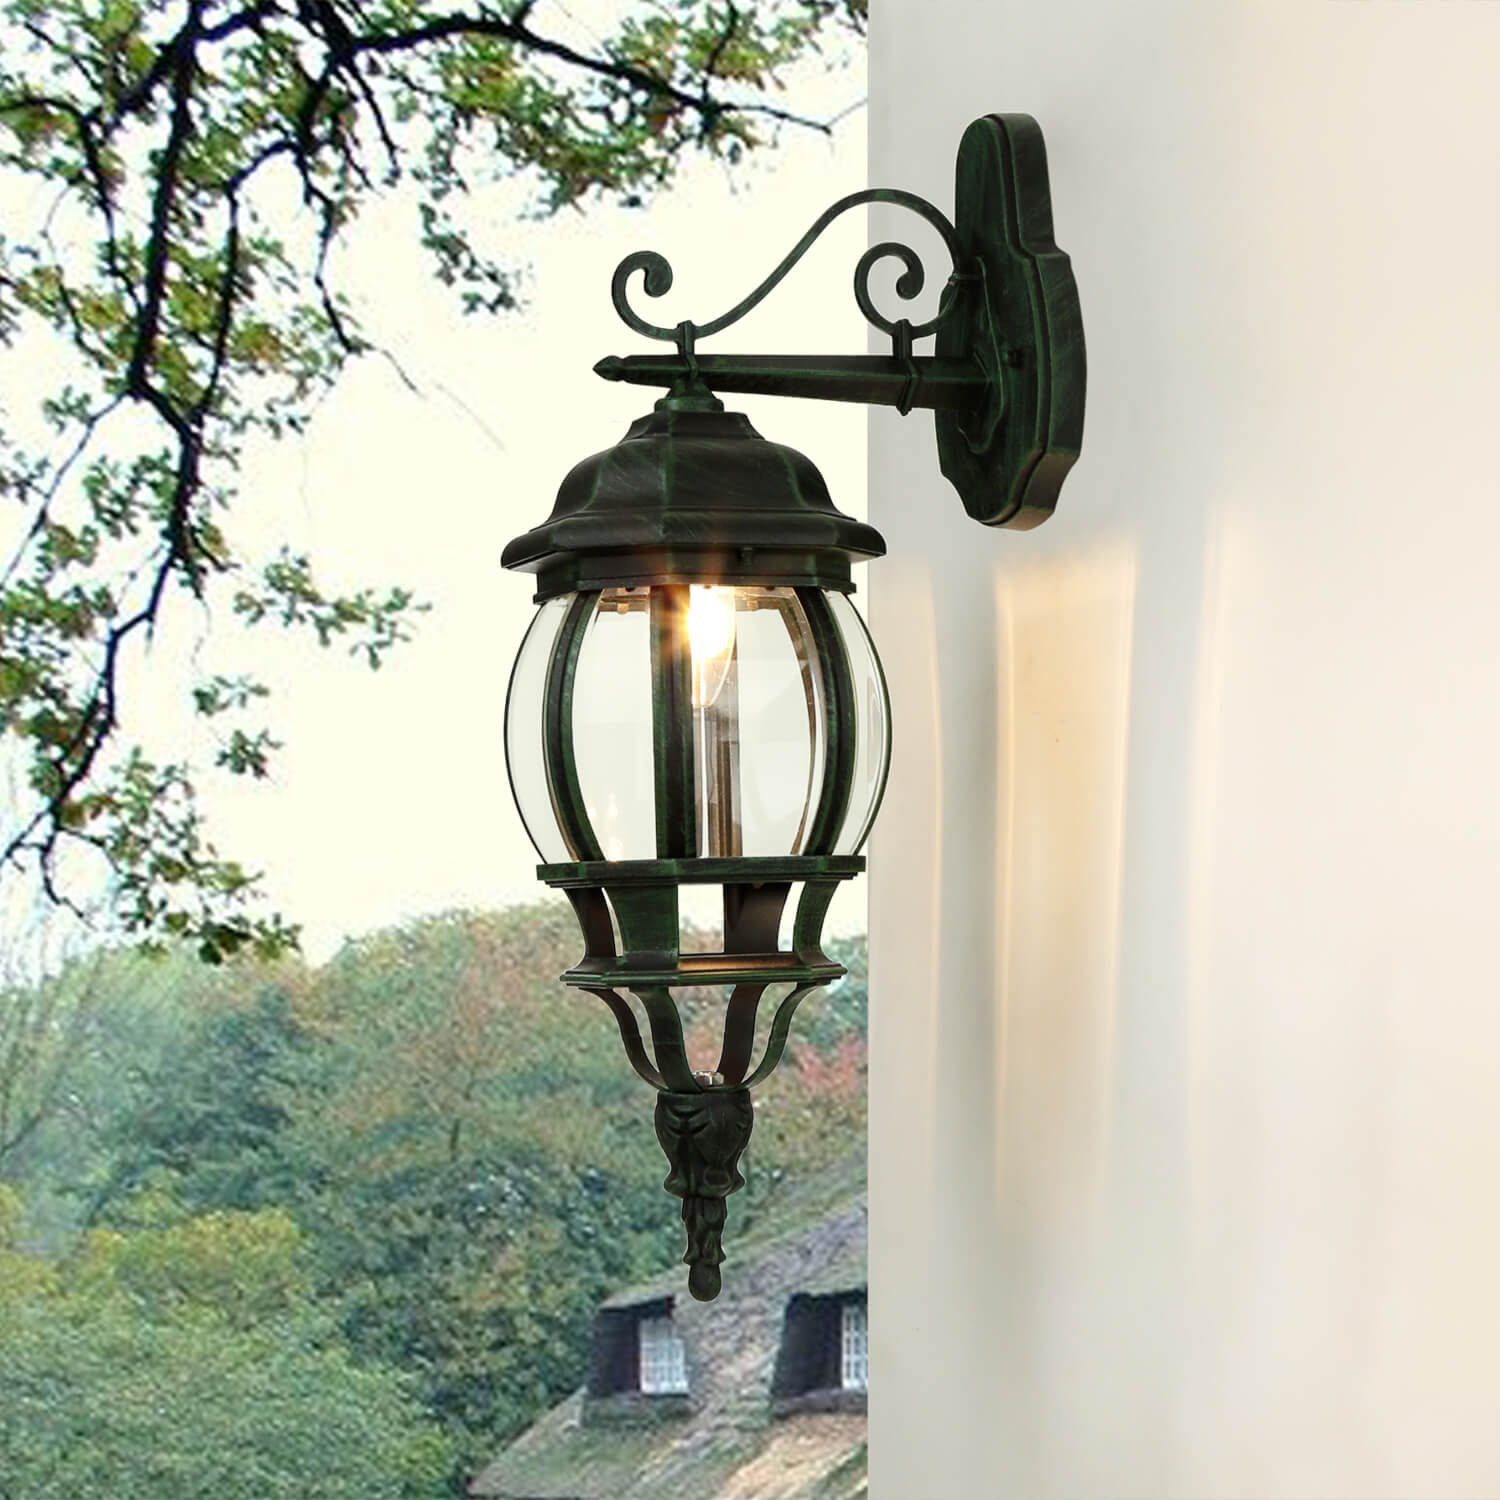 Landhaus Aussenlampen - Landhausstil Lampen, Aluminium schwarz